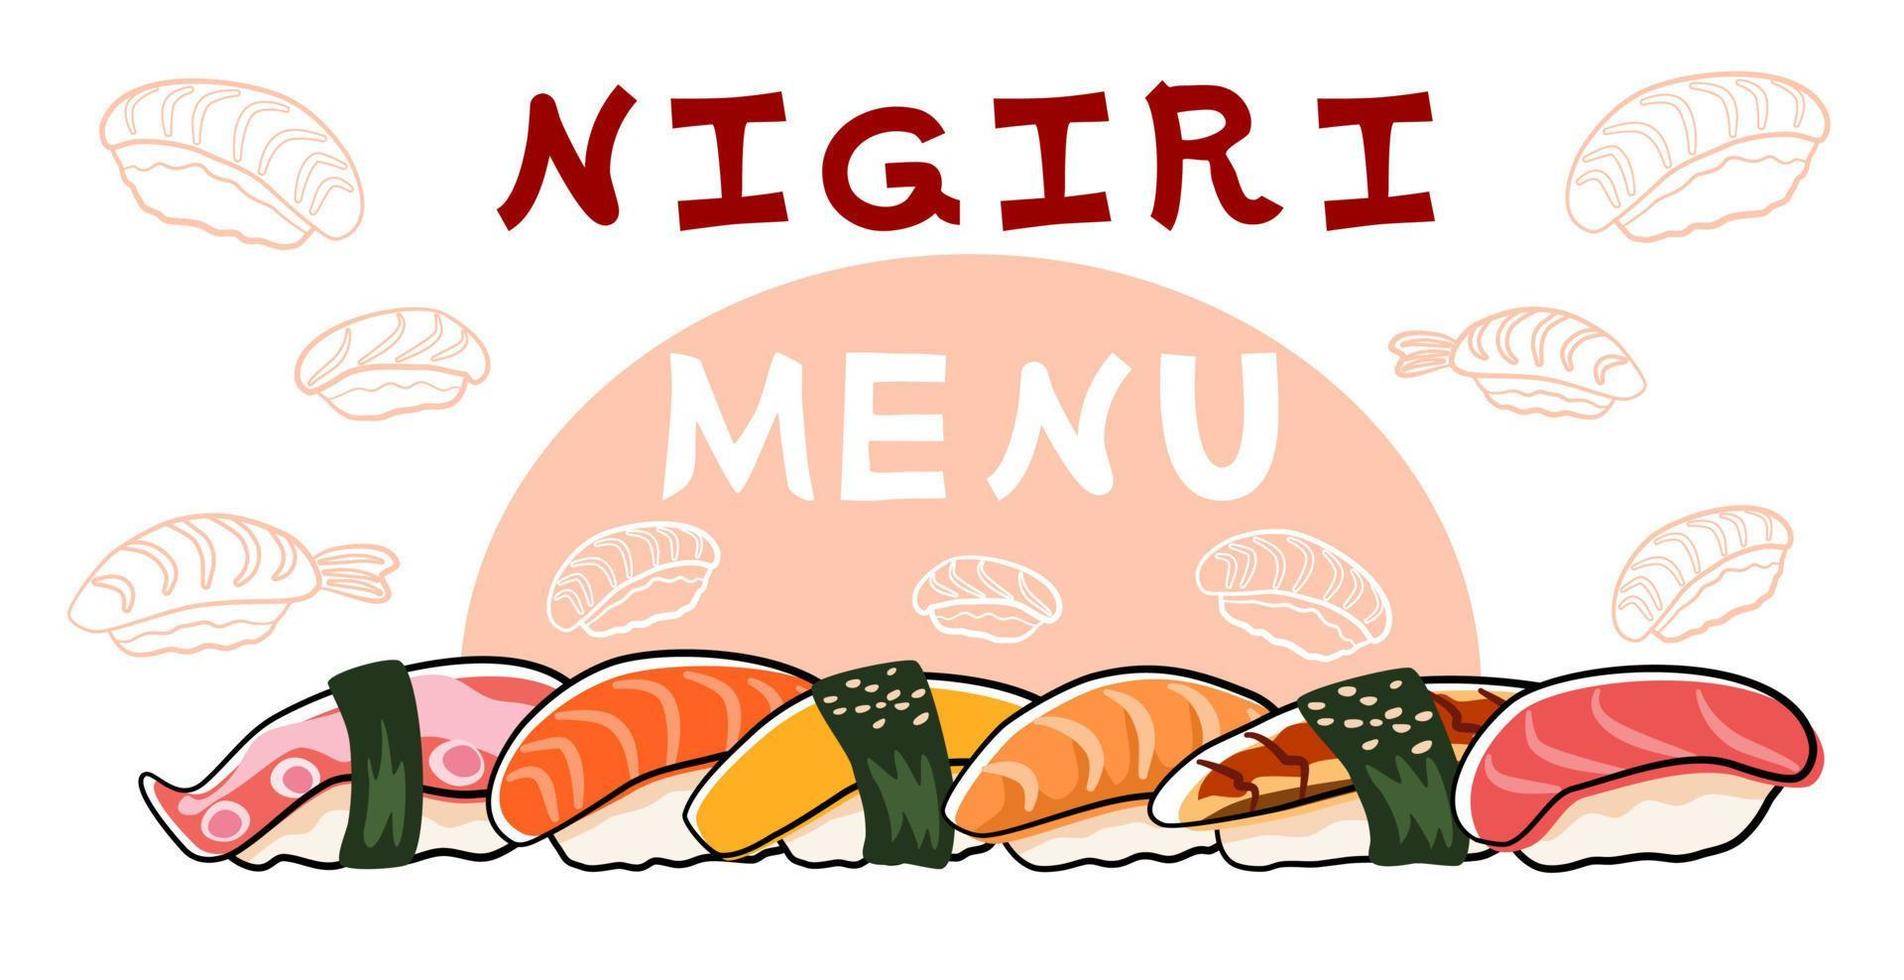 delicioso sushi nigiri set banner con fondo blanco. página de menú de comida japonesa. vector